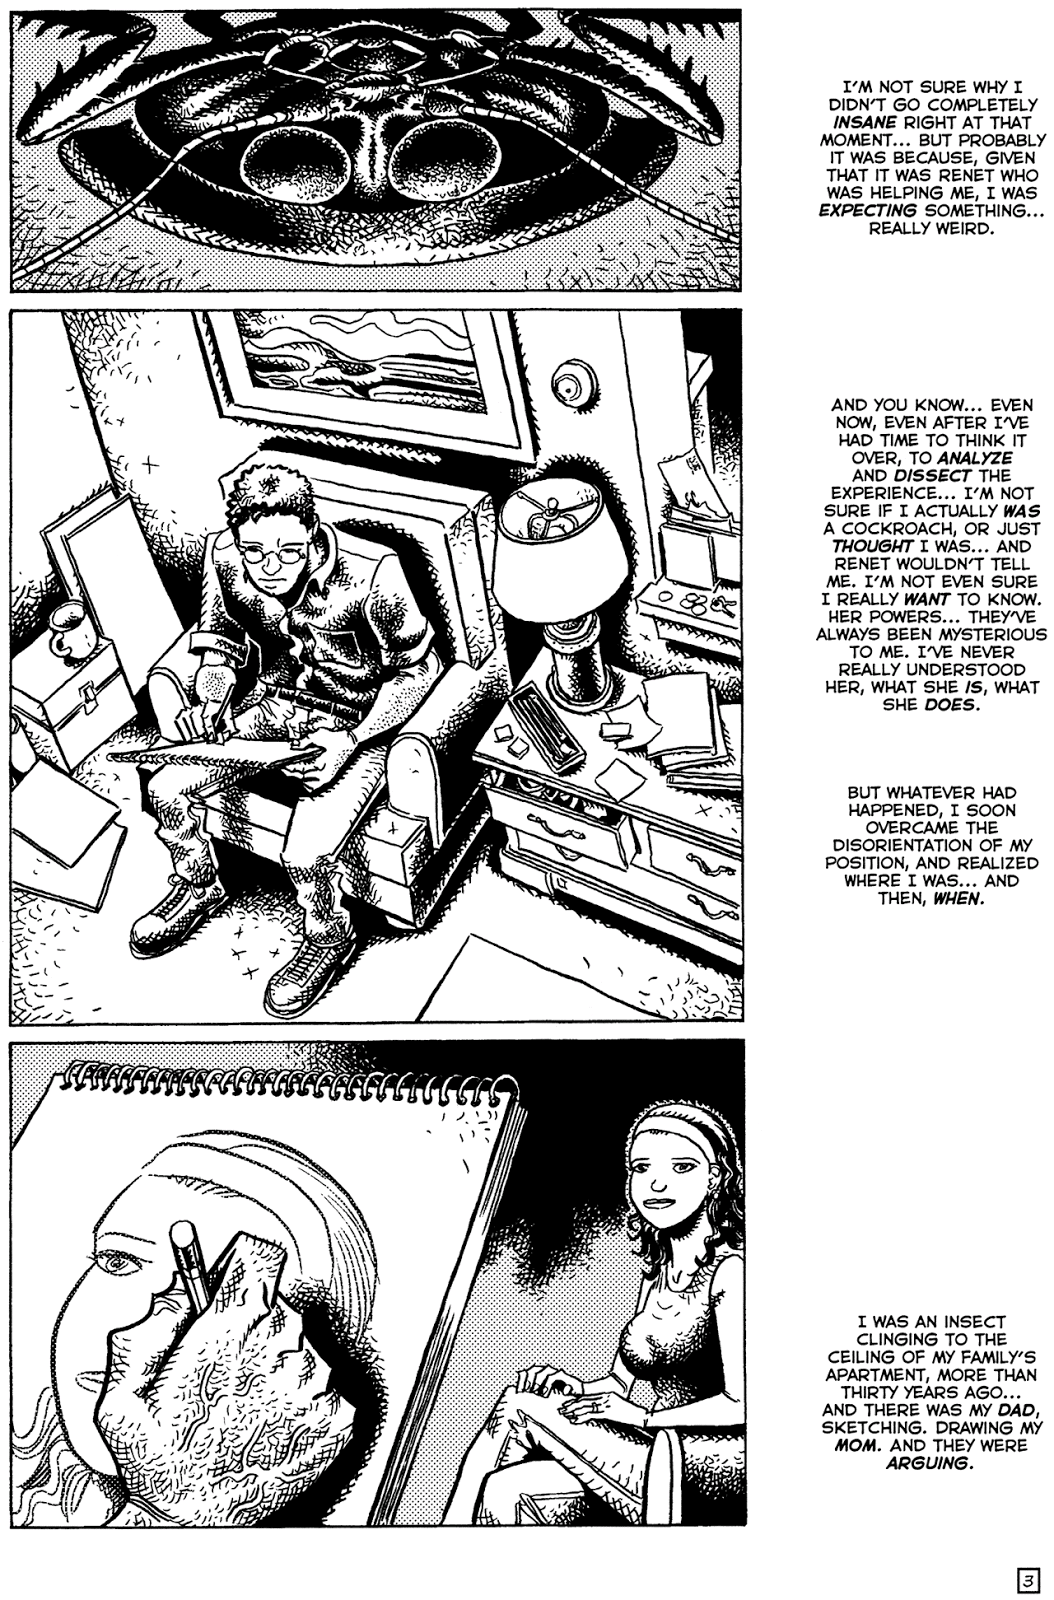 TMNT: Teenage Mutant Ninja Turtles issue 22 - Page 5